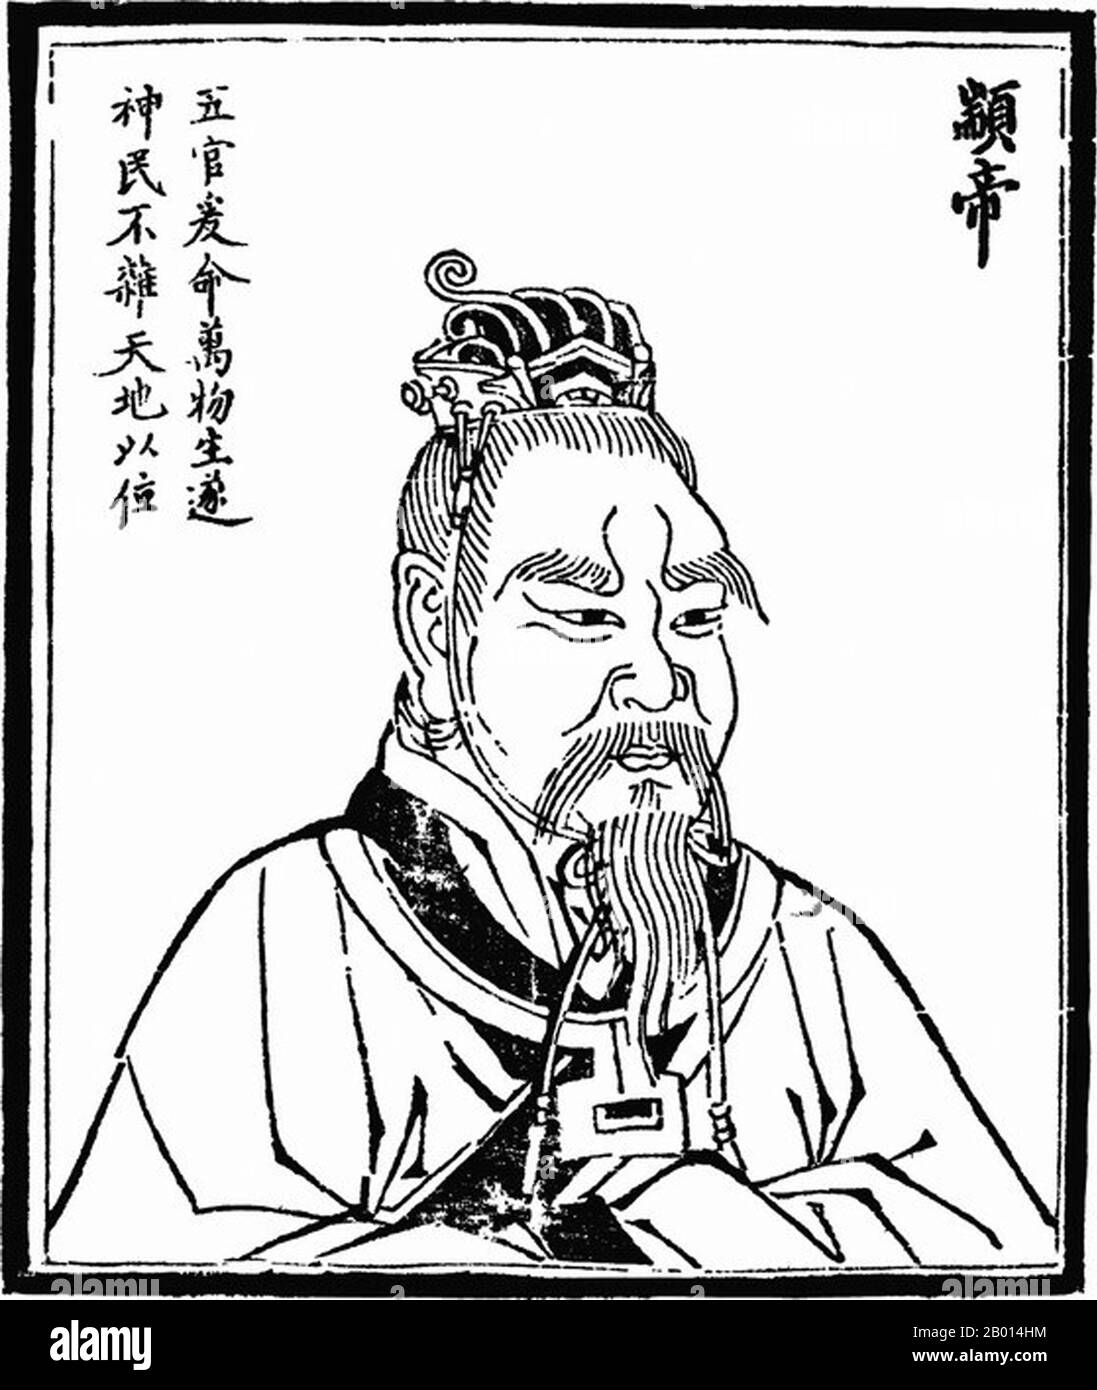 Chine : empereur Zhuanxu (C.2514-2436 BCE), deuxième des cinq empereurs légendaires. Illustration, c. 1498. Zhuanxu, également connu sous le nom de Gaoyang, était un empereur mythologique de la Chine ancienne. Petit-fils de l'empereur jaune, il devient souverain à l'âge de vingt ans. Il a passé des réformes religieuses pour s'opposer au chamanisme et a contribué à un calendrier unifié ainsi qu'au domaine de l'astrologie. Il est parfois adoré comme le dieu de l'étoile du pôle. Les trois souverains et les cinq Empereurs sont un mélange de dirigeants mythologiques et de héros culturels de la Chine antique datant vaguement de la période c. 3500-2000 BCE. Banque D'Images